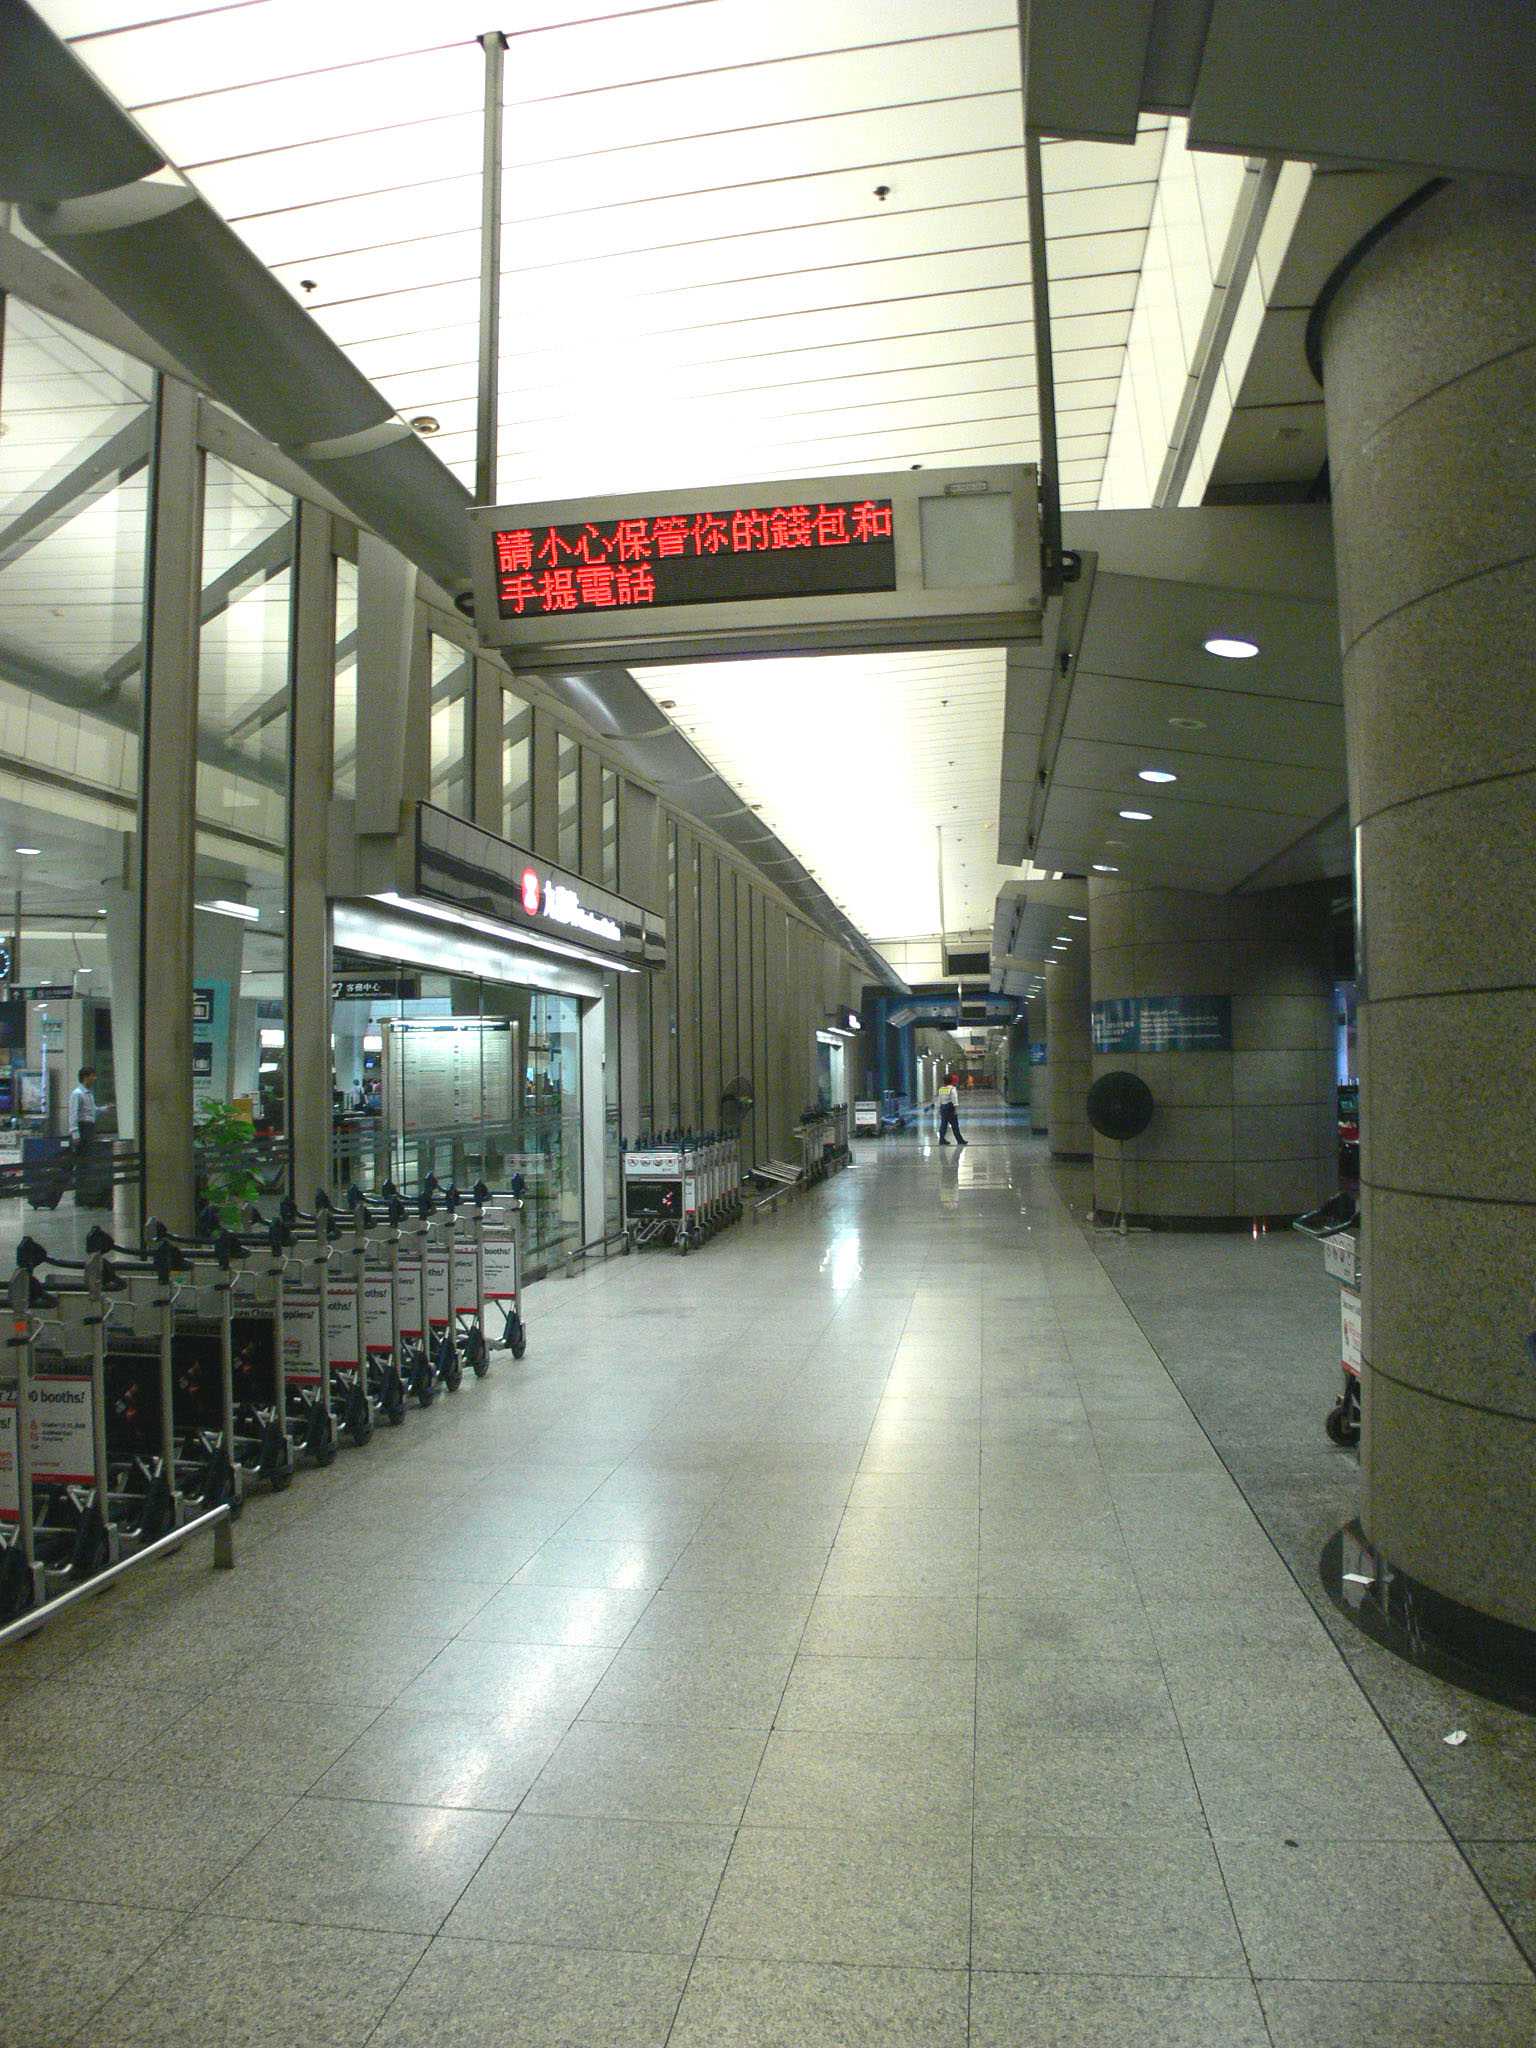 相片 2: 港鐵機場快綫九龍站